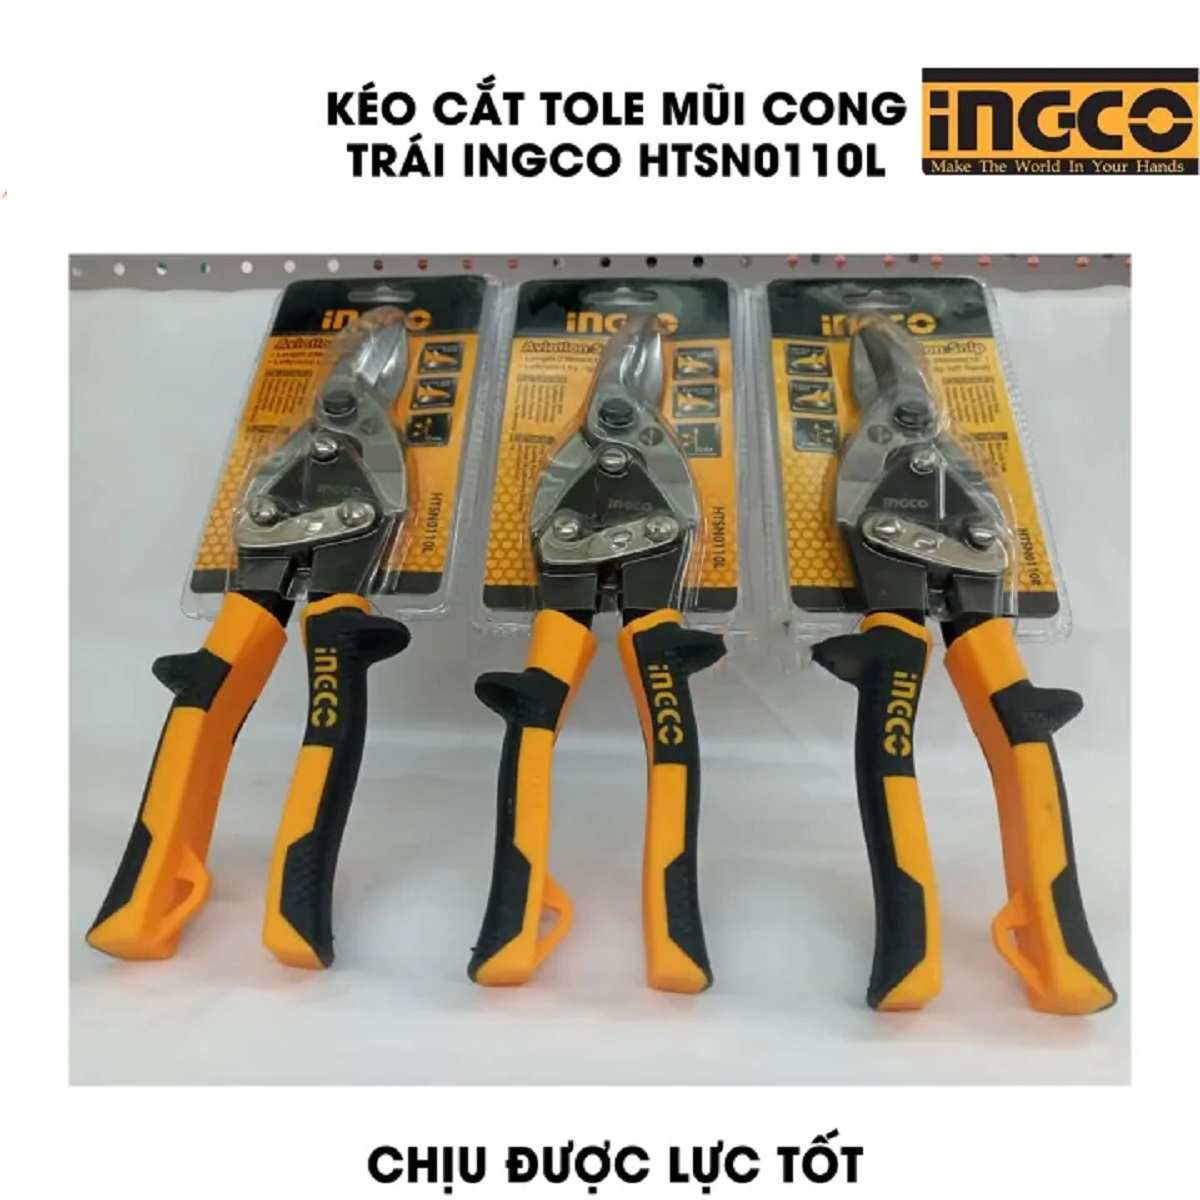 Hình ảnh 4 của mặt hàng Kéo cắt tole (cắt trái) Ingco HTSN0110L